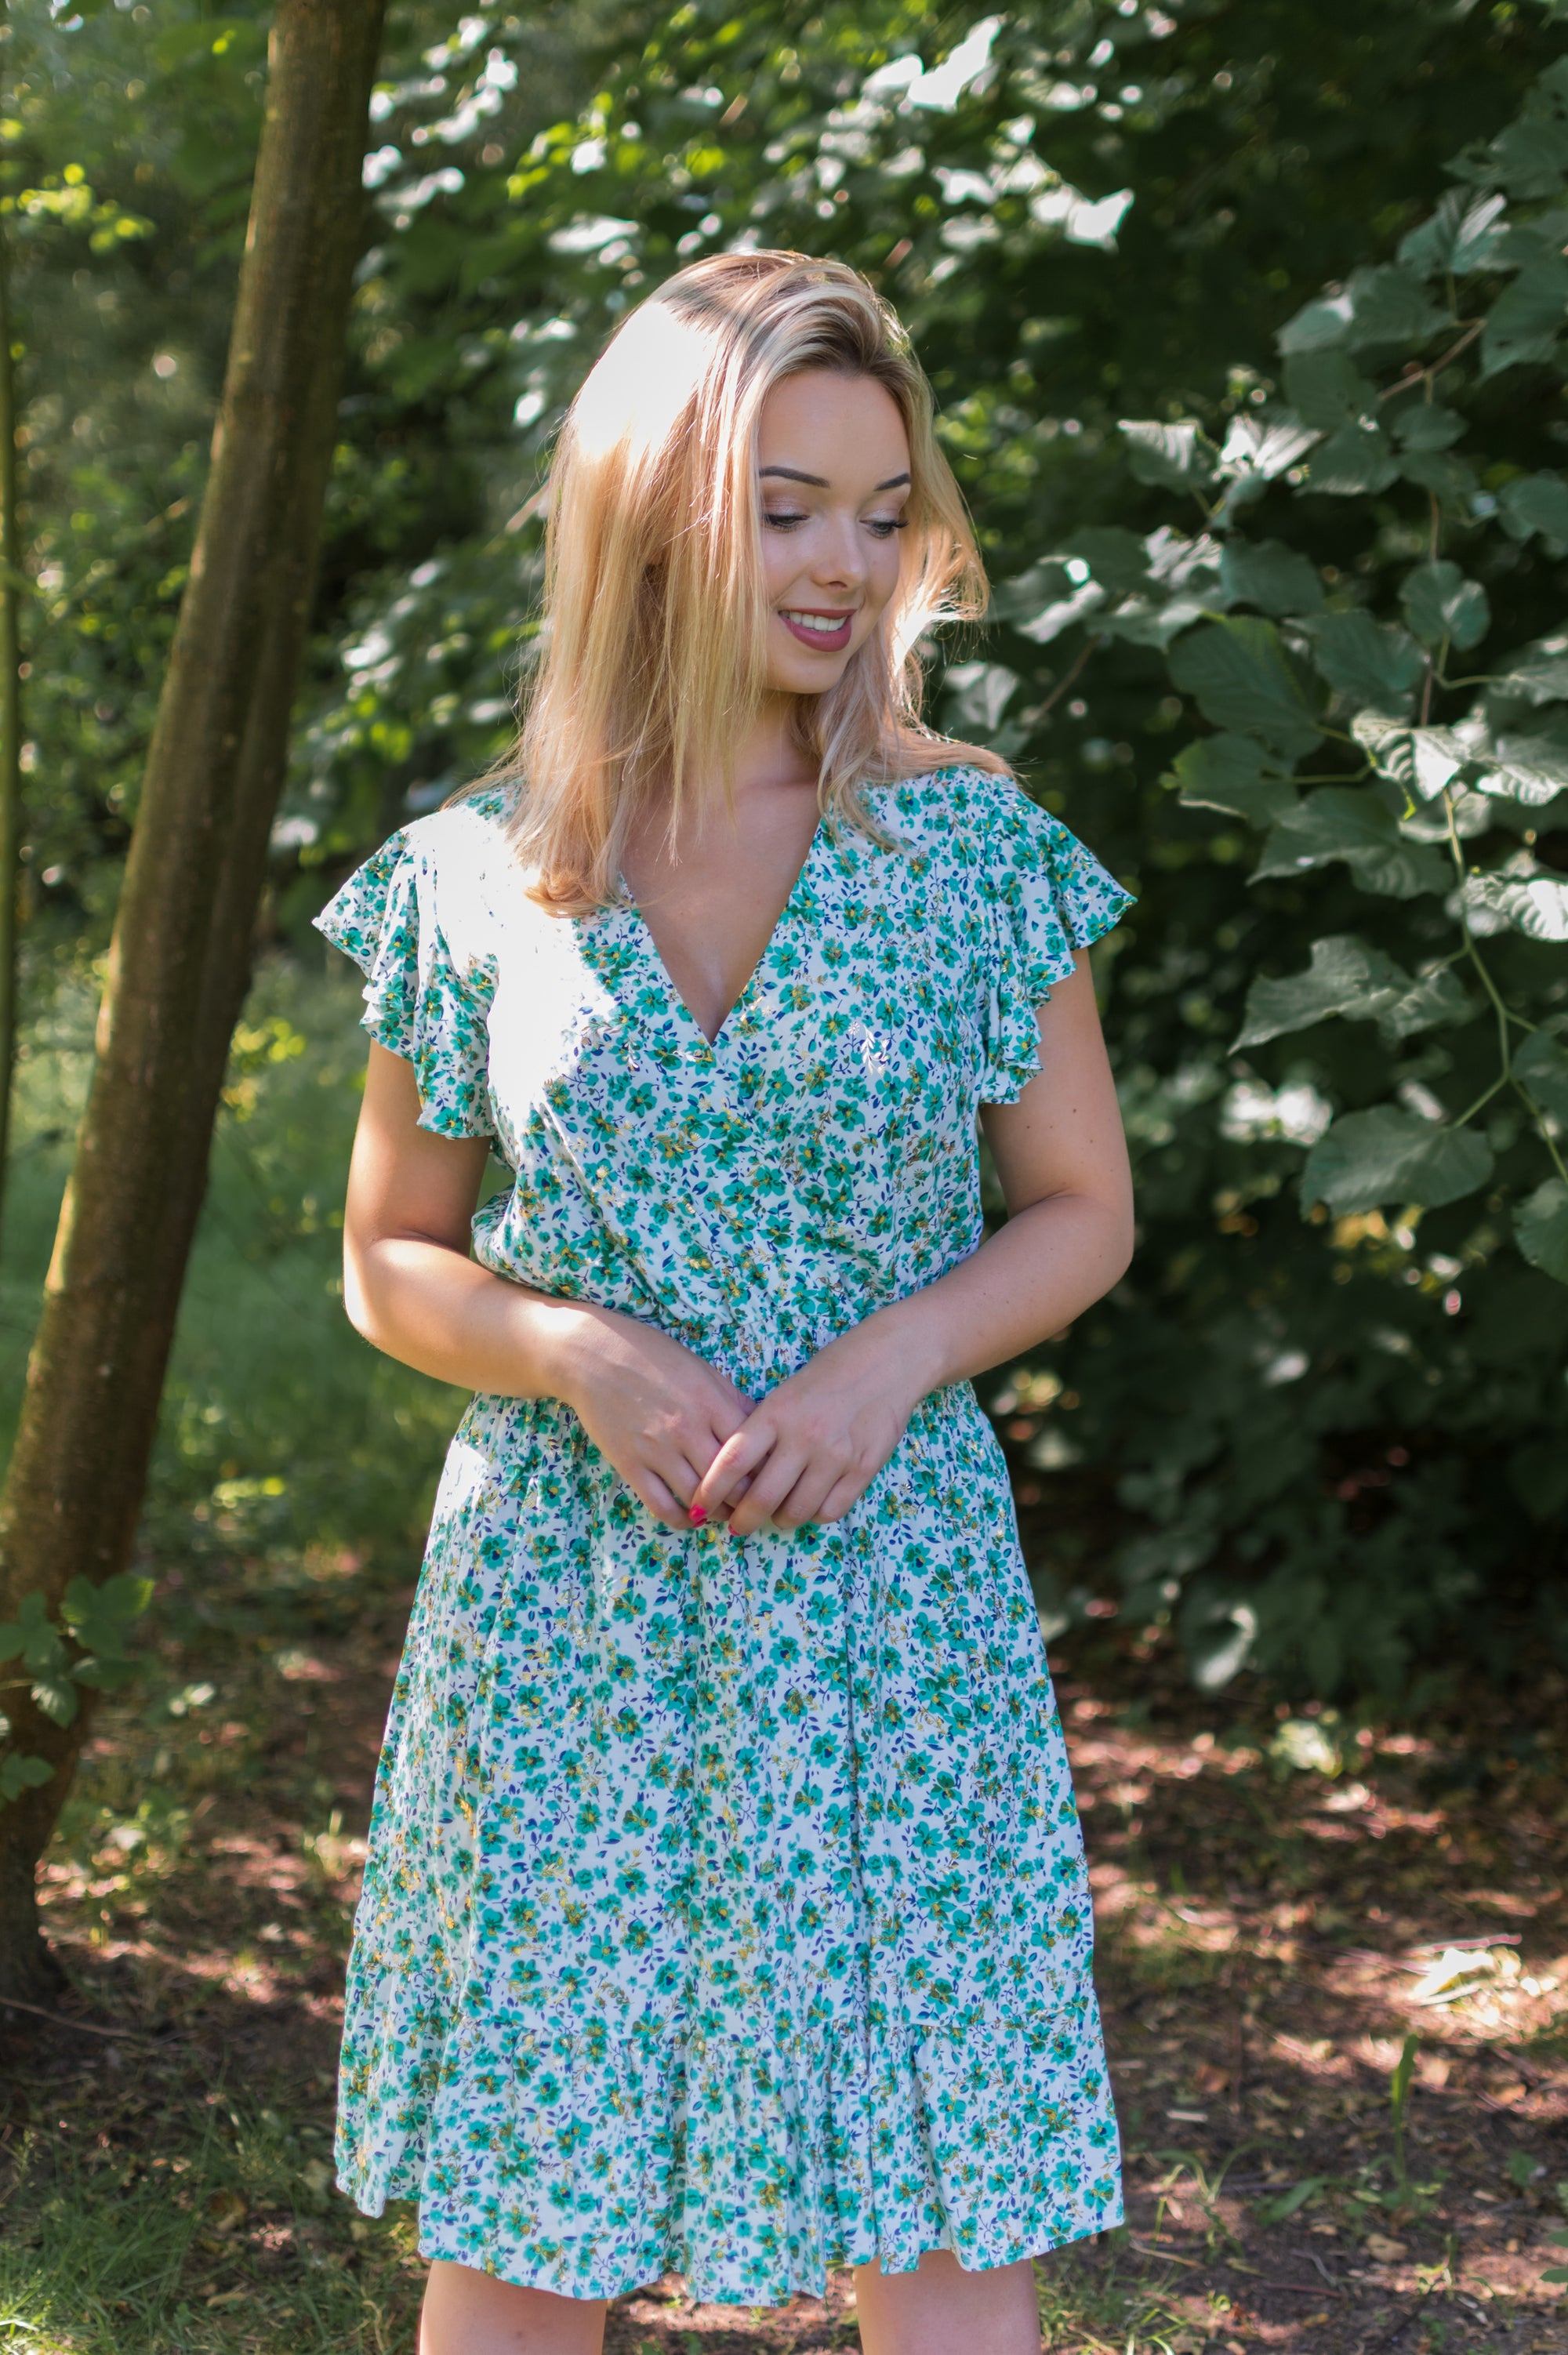 Breezy Dress - Green (alleen online te koop, niet in de winkel)